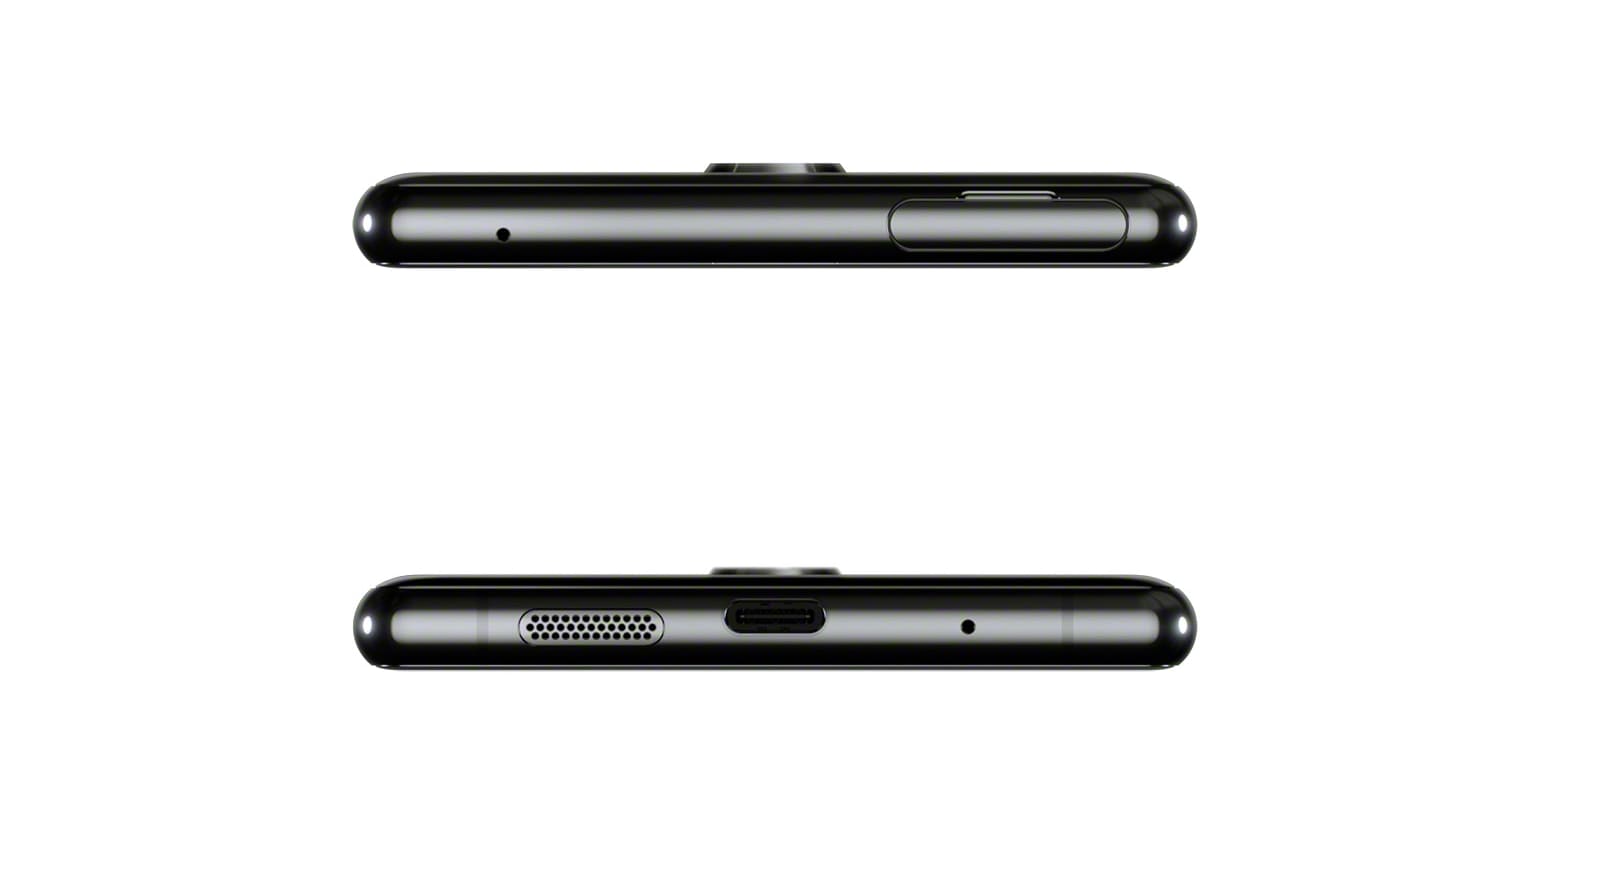 Sony Xperia 1 4K HDR OLED smartphone